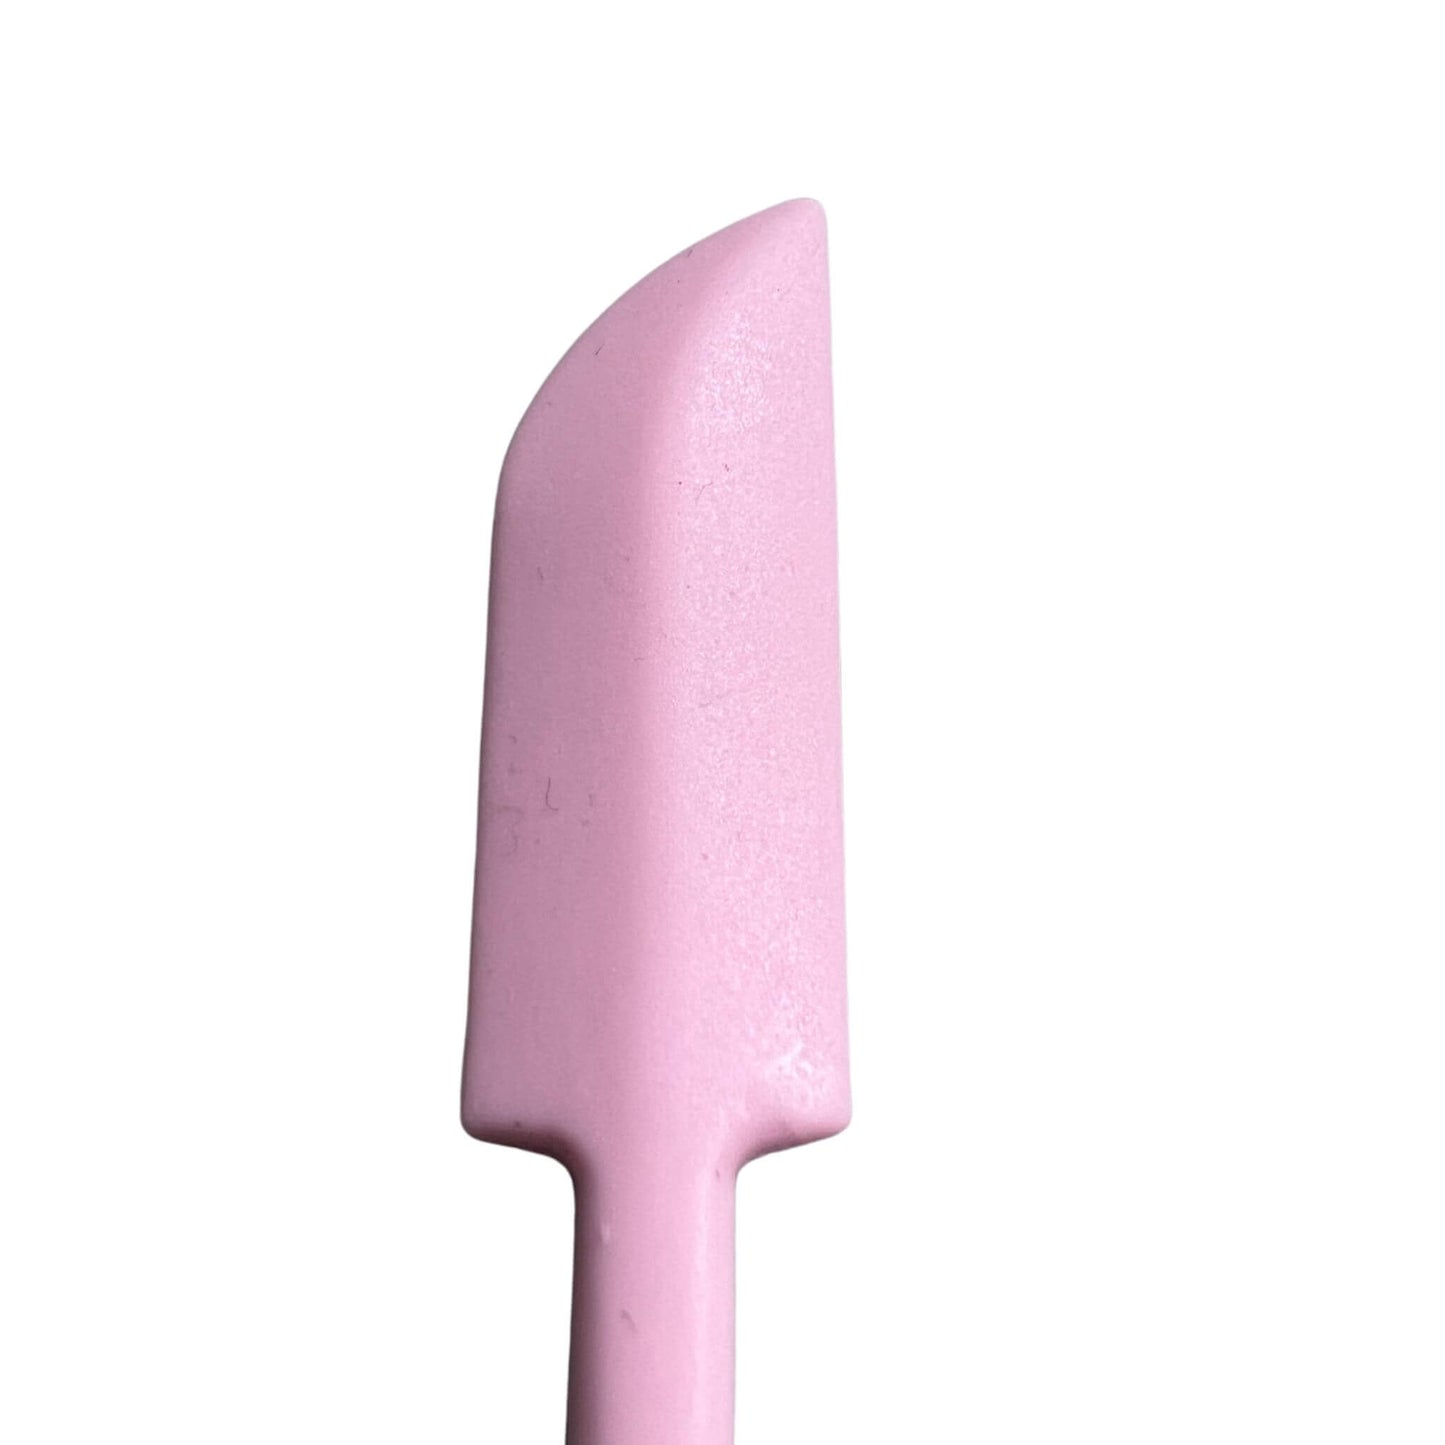 set of 3 jar spatula scrapers in pink close up